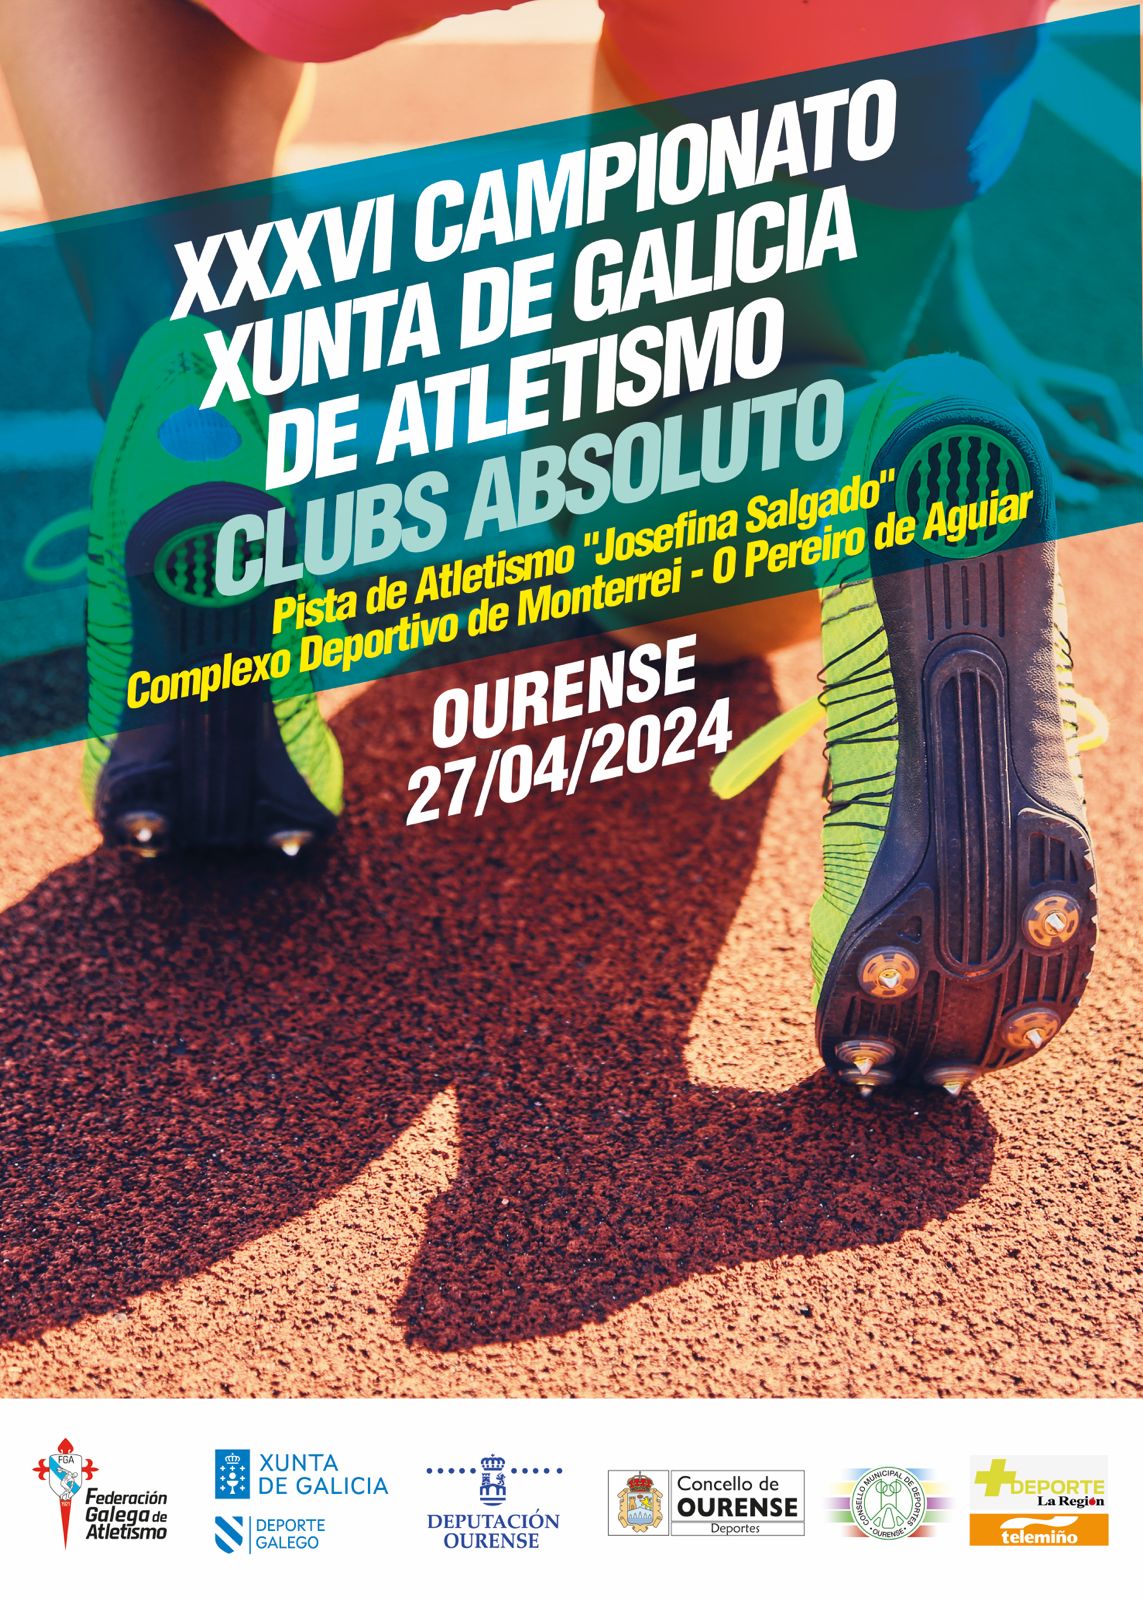 XXXVI Campionato Xunta de Galicia de Clubs Absoluto